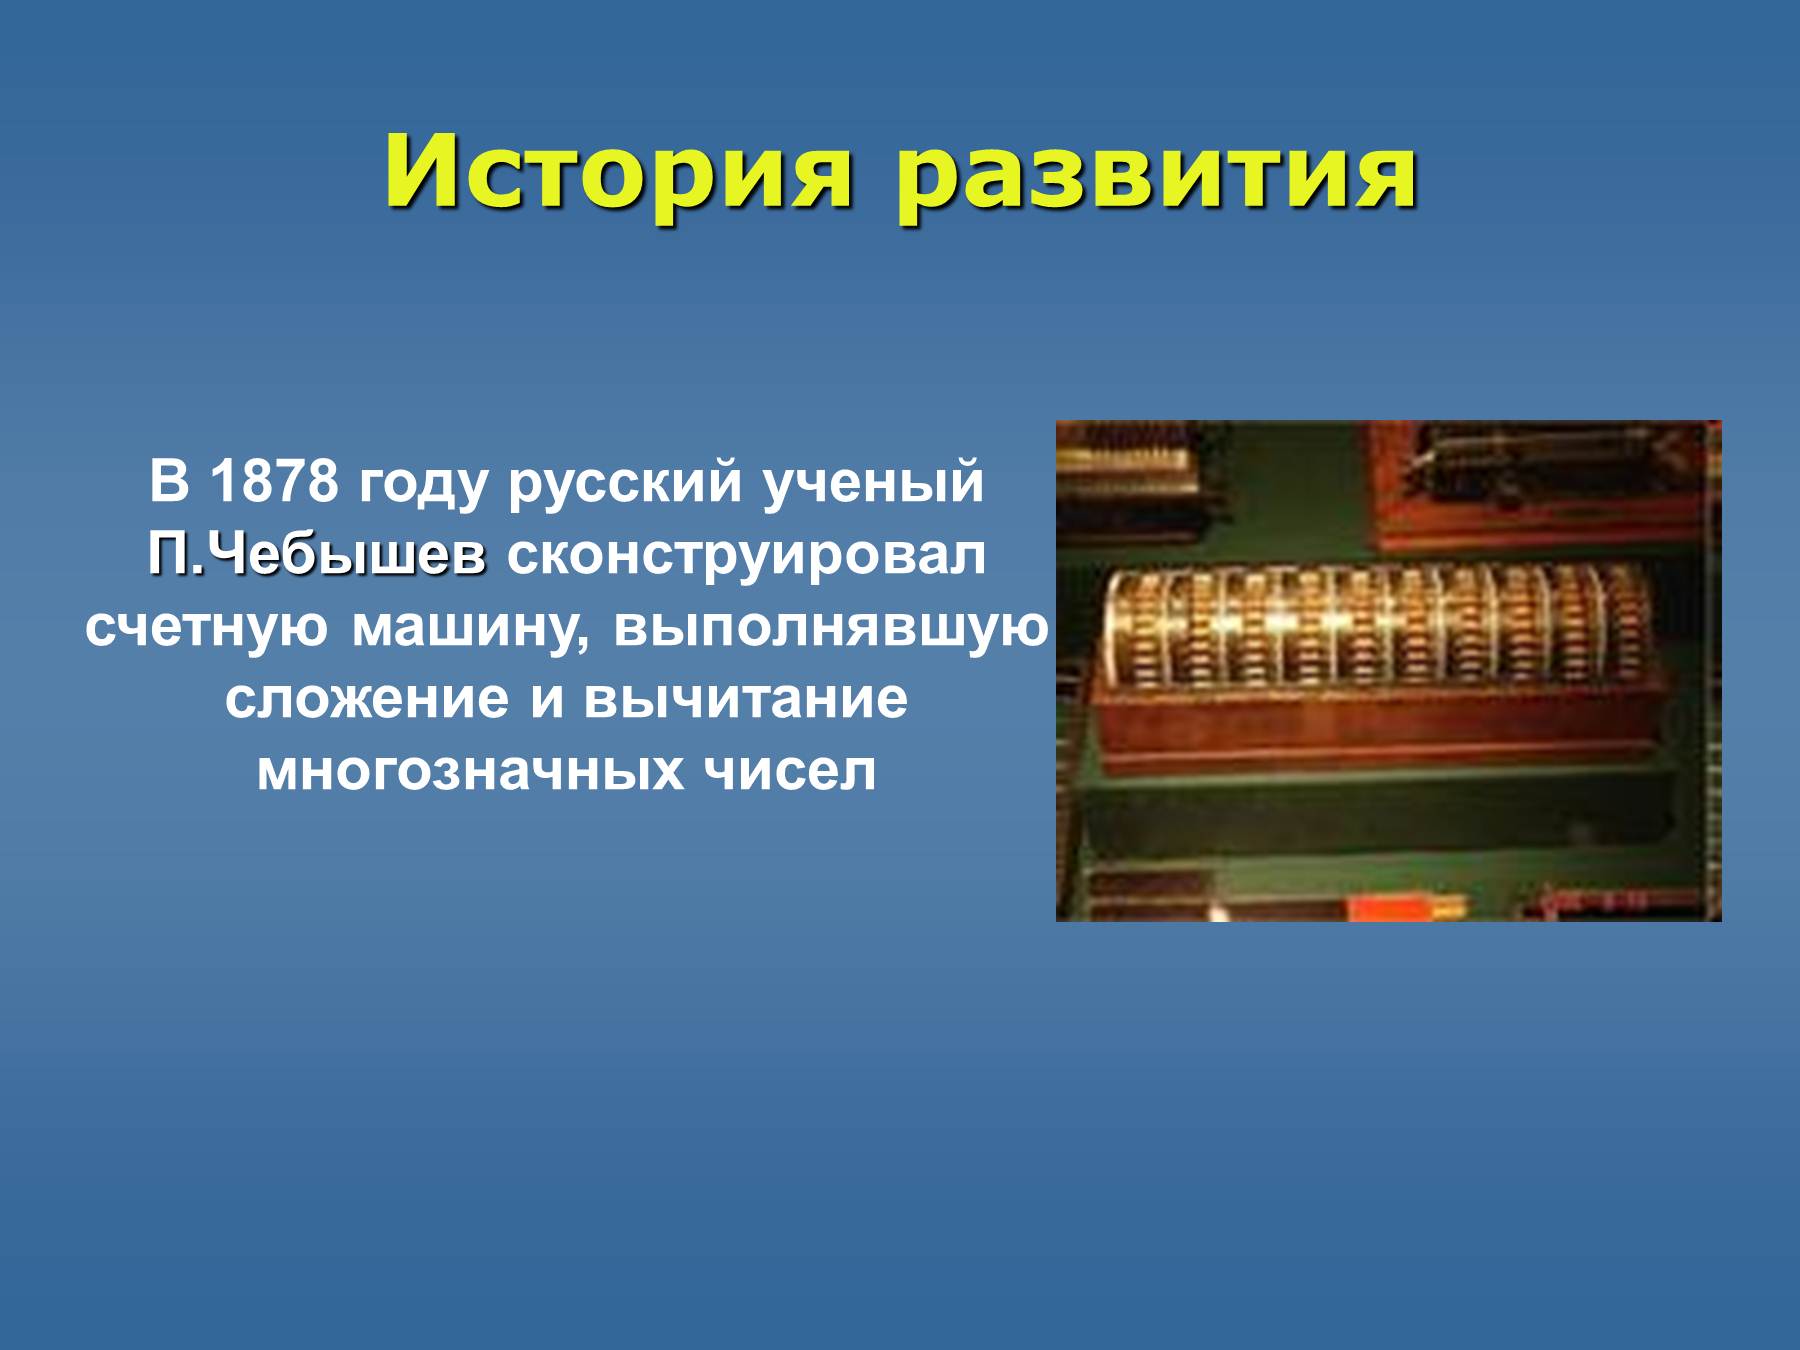 Прошлое счетных устройств подготовительная группа. Чебышев сконструировал Счетную машину. Путешествие в прошлое счетных устройств. Первые счетные приборы. Счетные приборы современные.